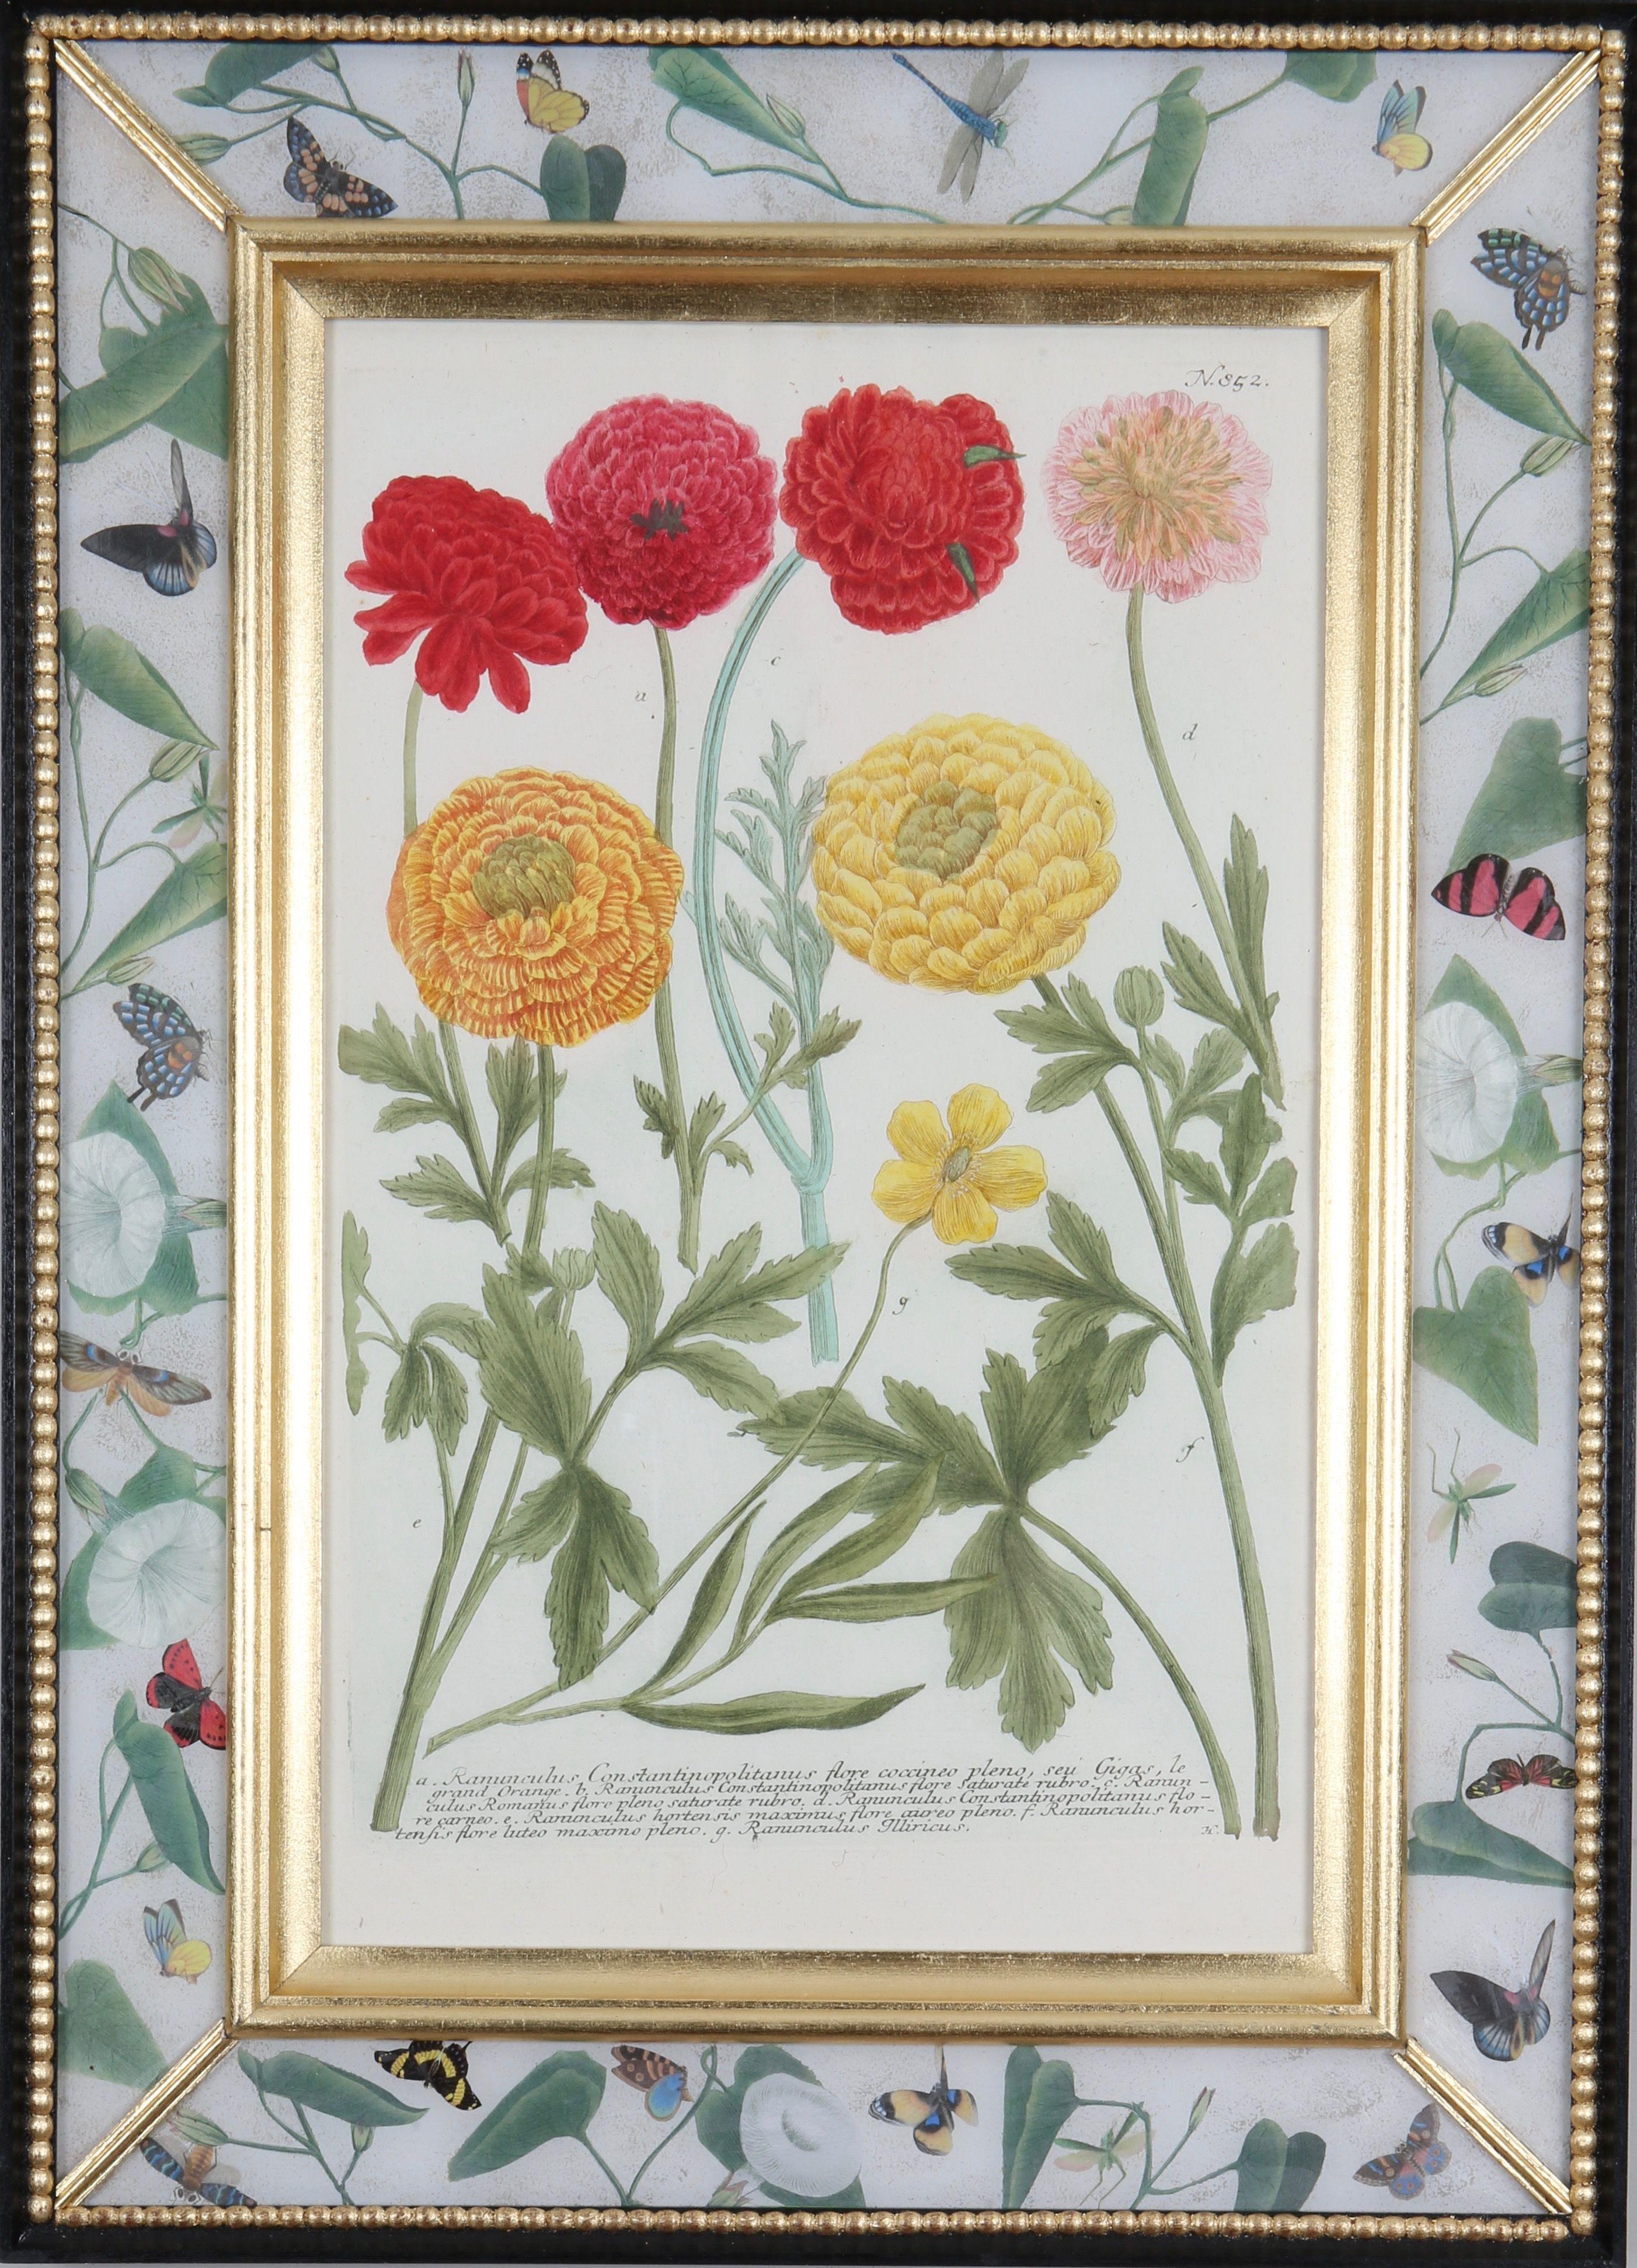 Un groupe de gravures de fleurs en taille-douce provenant de : "Phytanthoza Iconographia",  c1739, présentés dans des cadres artisanaux en or blanc, ébénisterie et décalcomanie. 

Johann Weinmann (1683-1741), pharmacien et apothicaire allemand, est